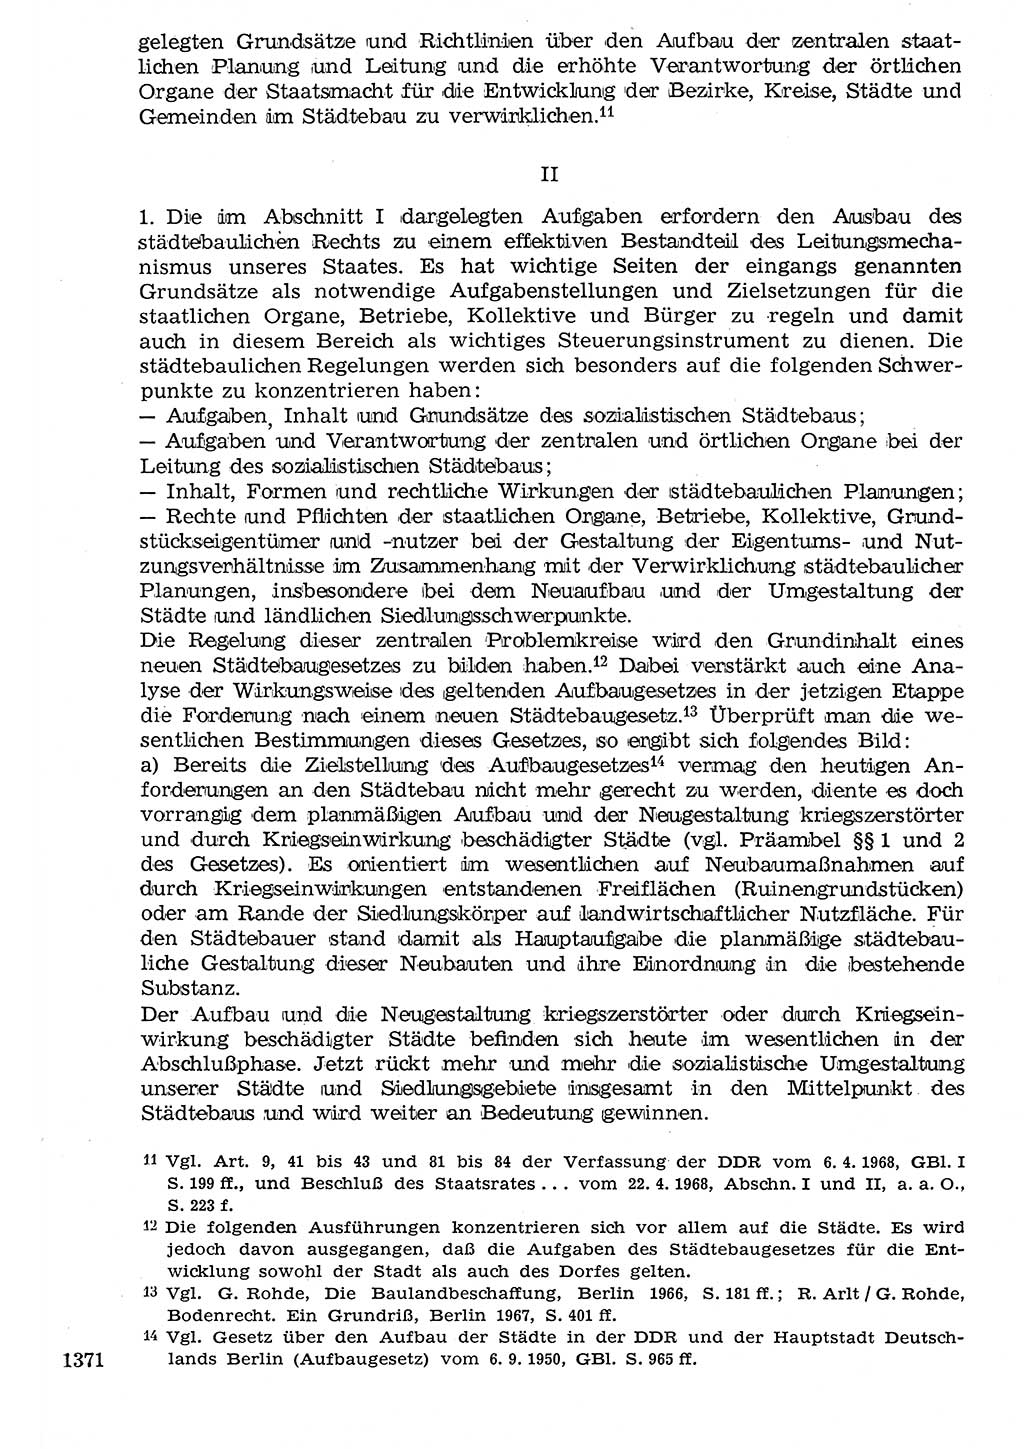 Staat und Recht (StuR), 17. Jahrgang [Deutsche Demokratische Republik (DDR)] 1968, Seite 1371 (StuR DDR 1968, S. 1371)